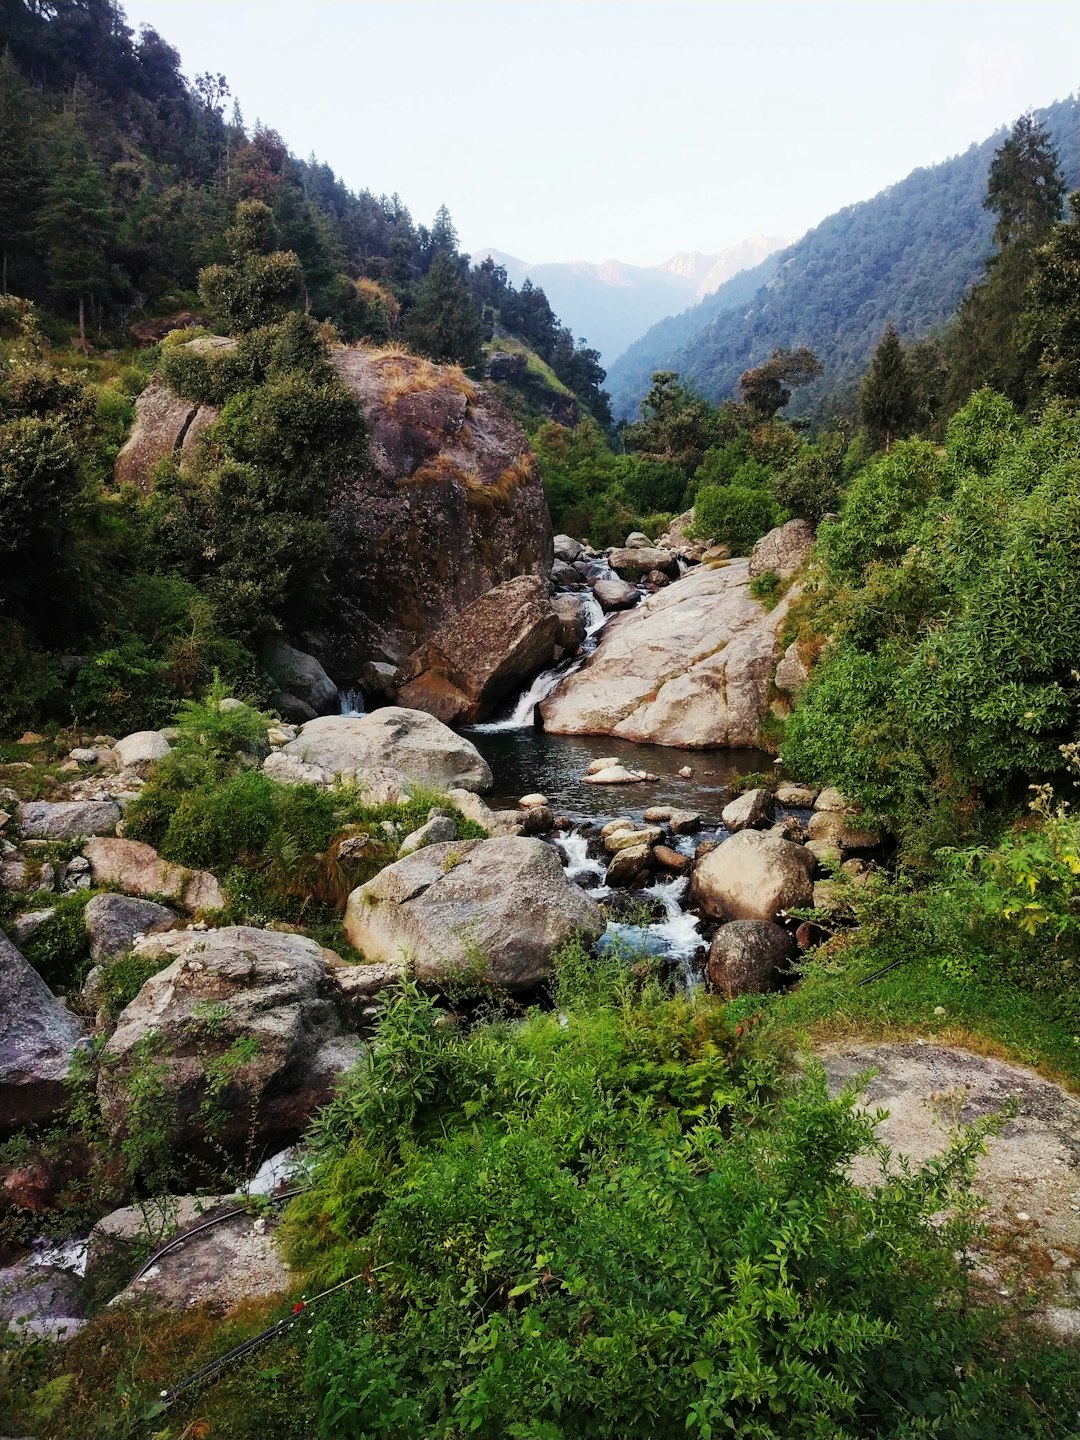 Nature reserve photo spot Nohradhar Shimla